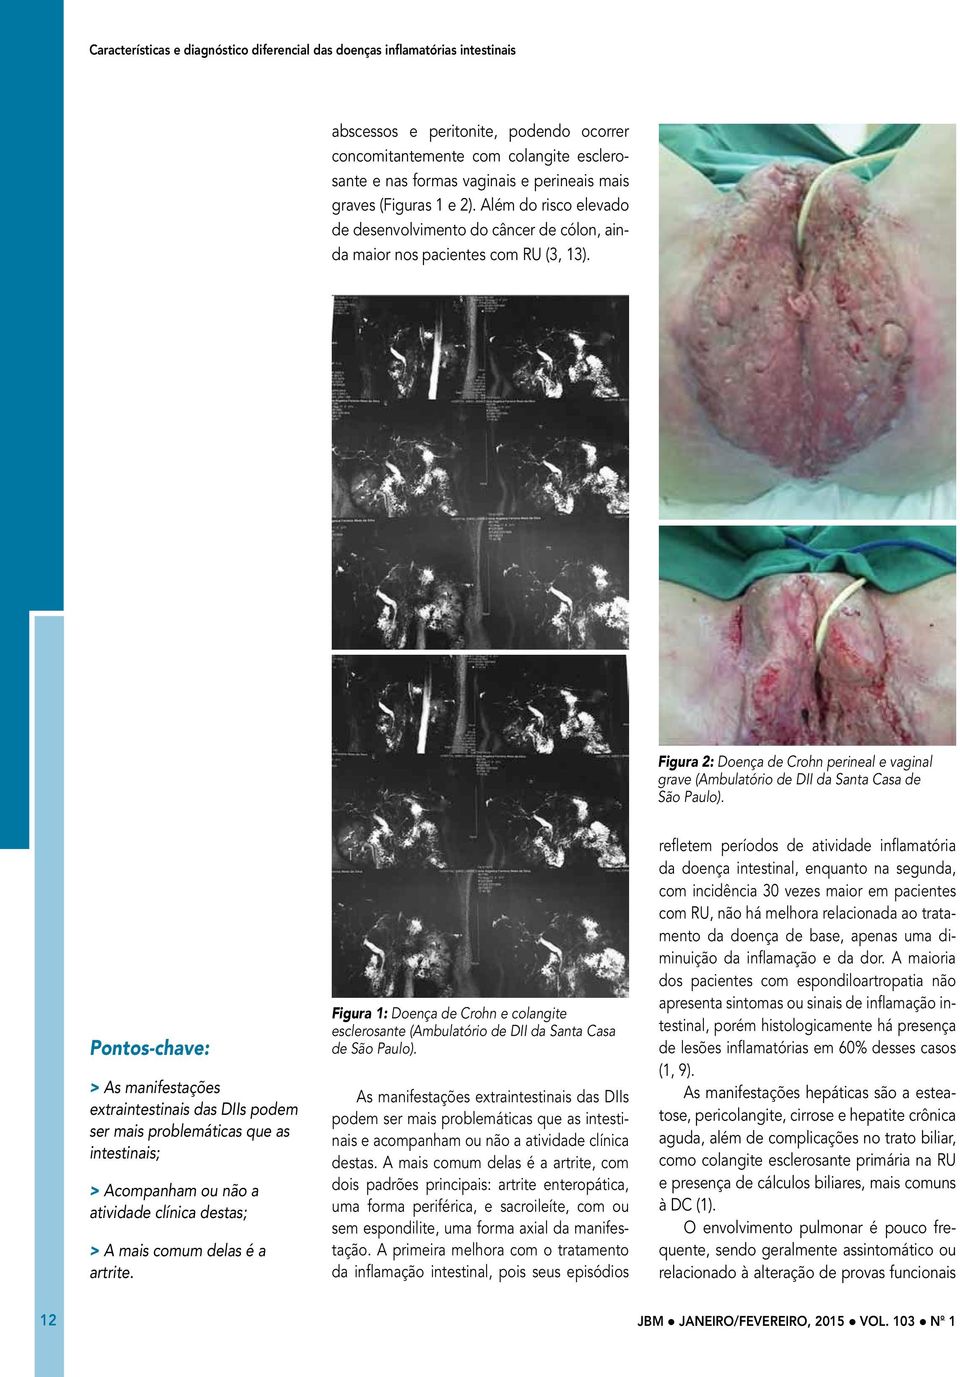 Figura 2: Doença de Crohn perineal e vaginal grave (Ambulatório de DII da Santa Casa de São Paulo).